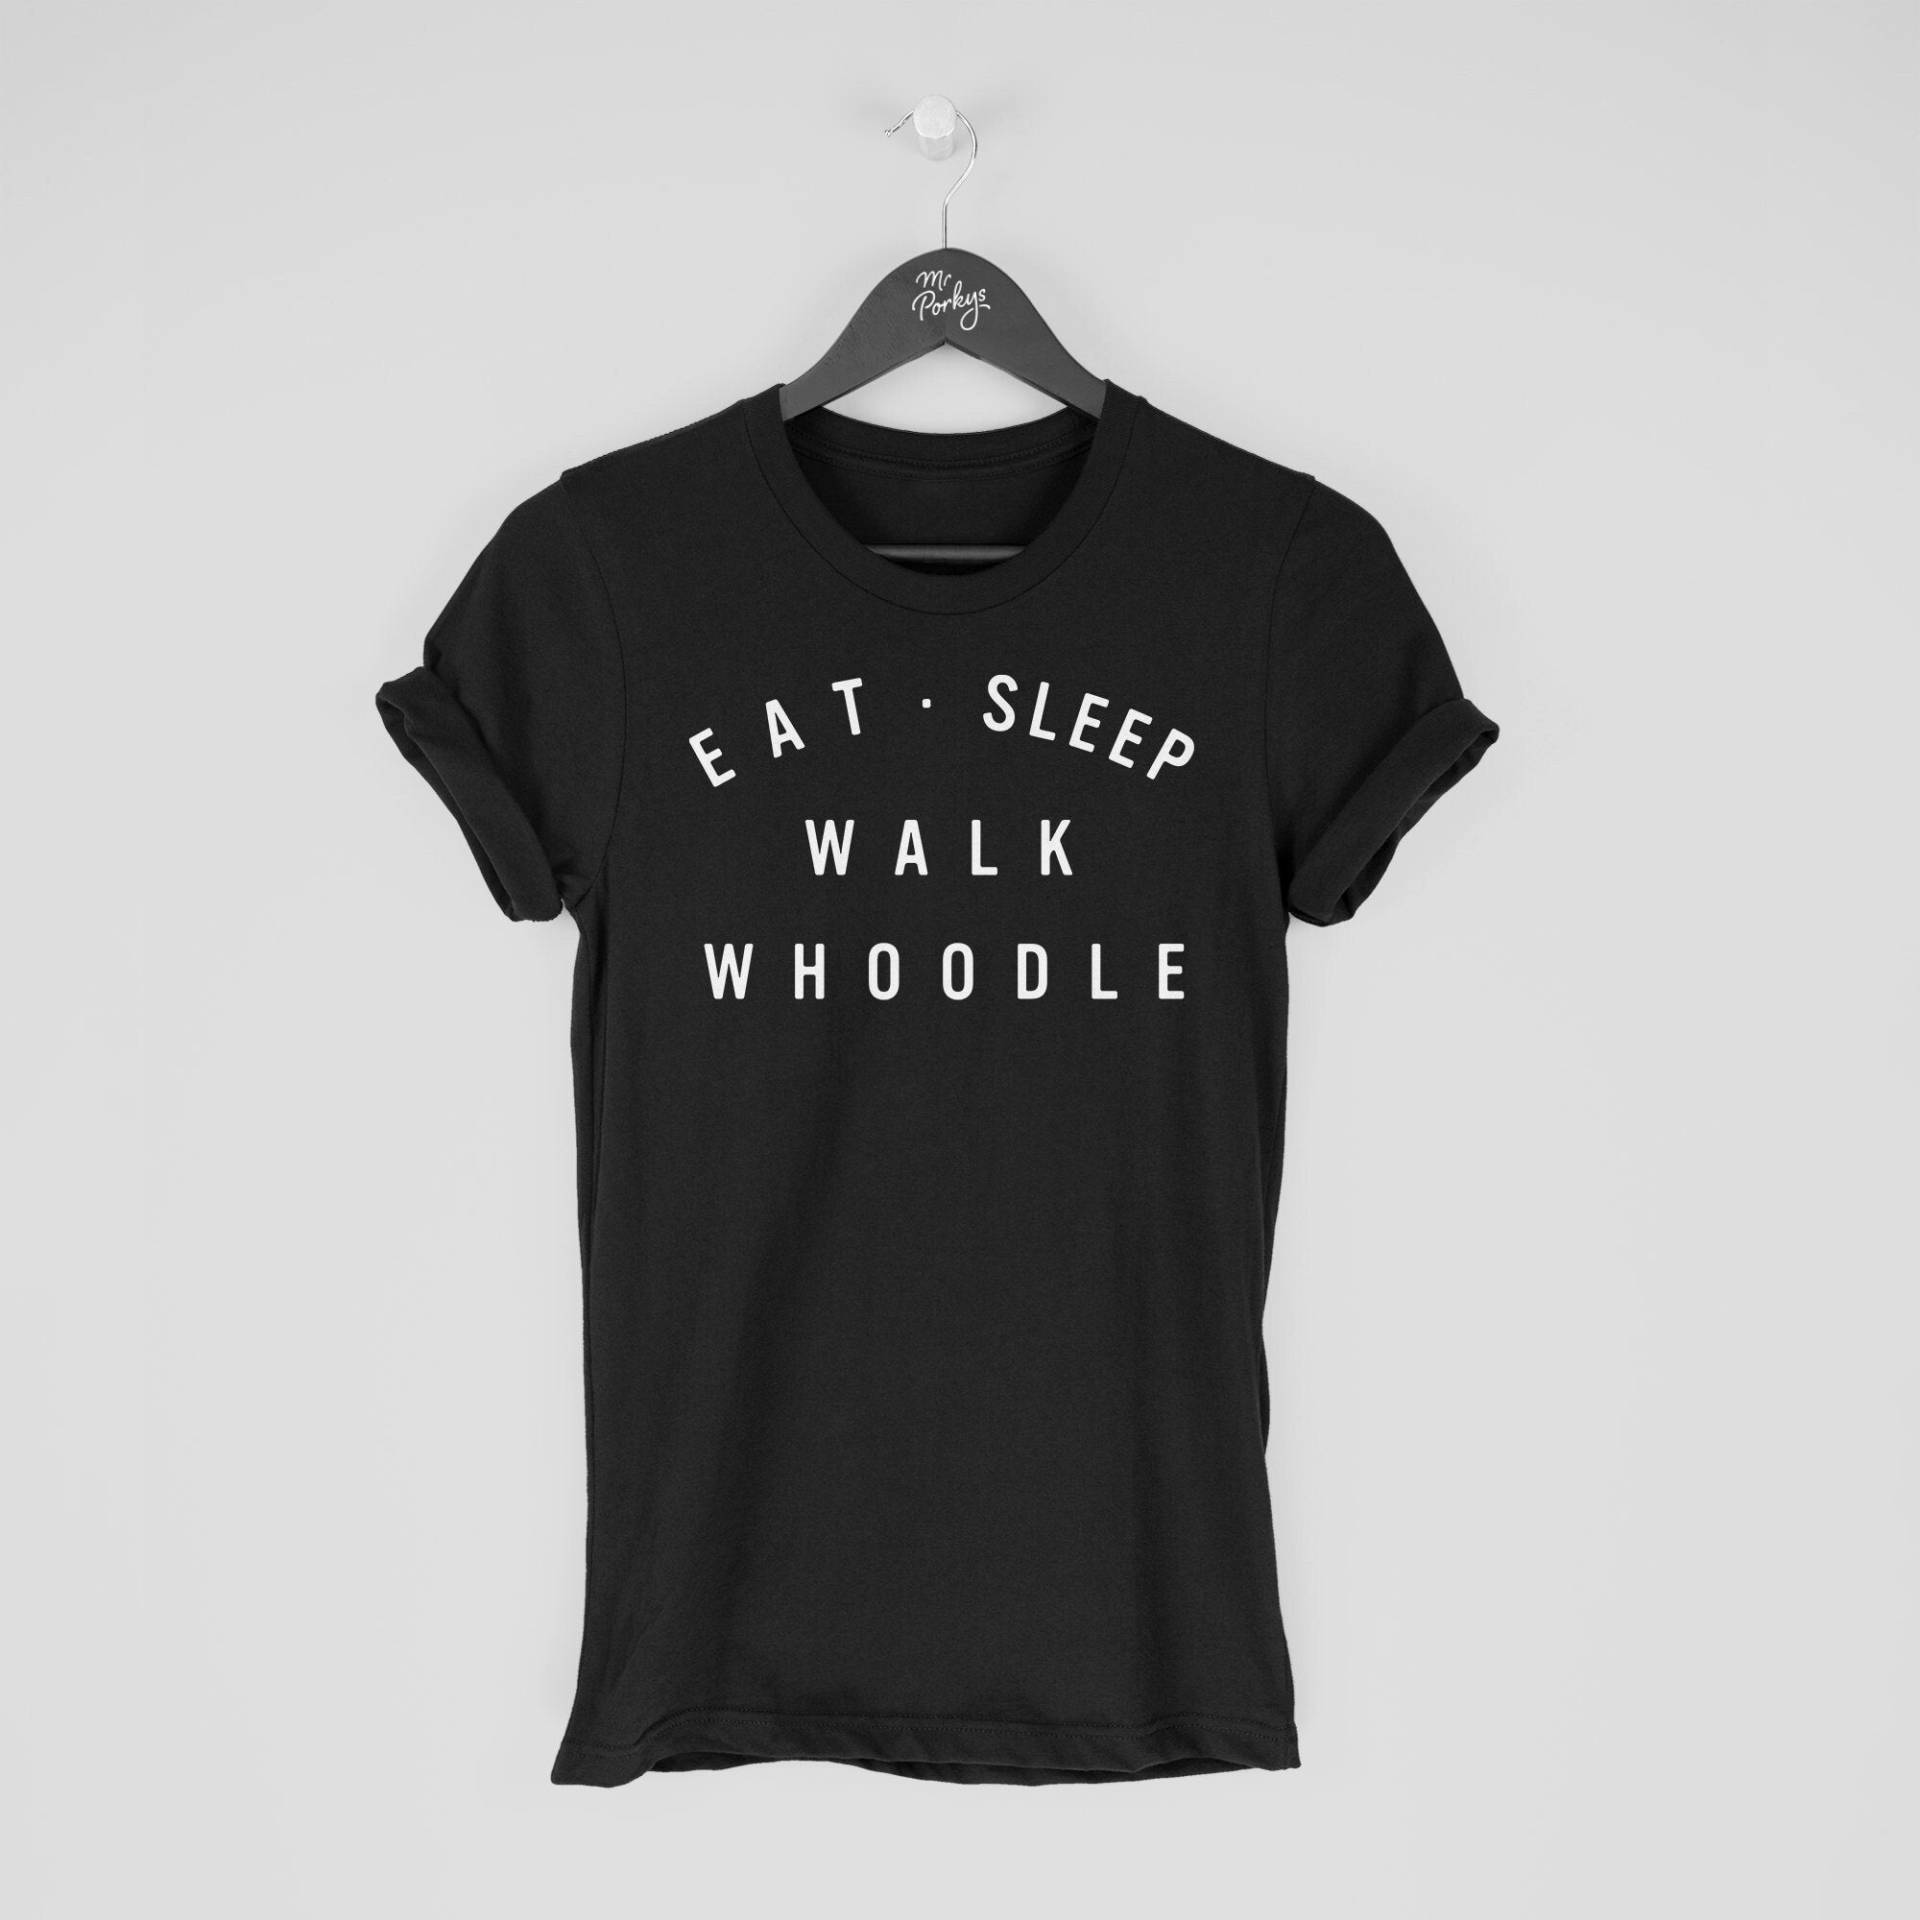 Whoodle Shirt, Eat Sleep Walk T-Shirt, Geschenk Für Besitzer, Tshirt von MrPorkysGiftShop